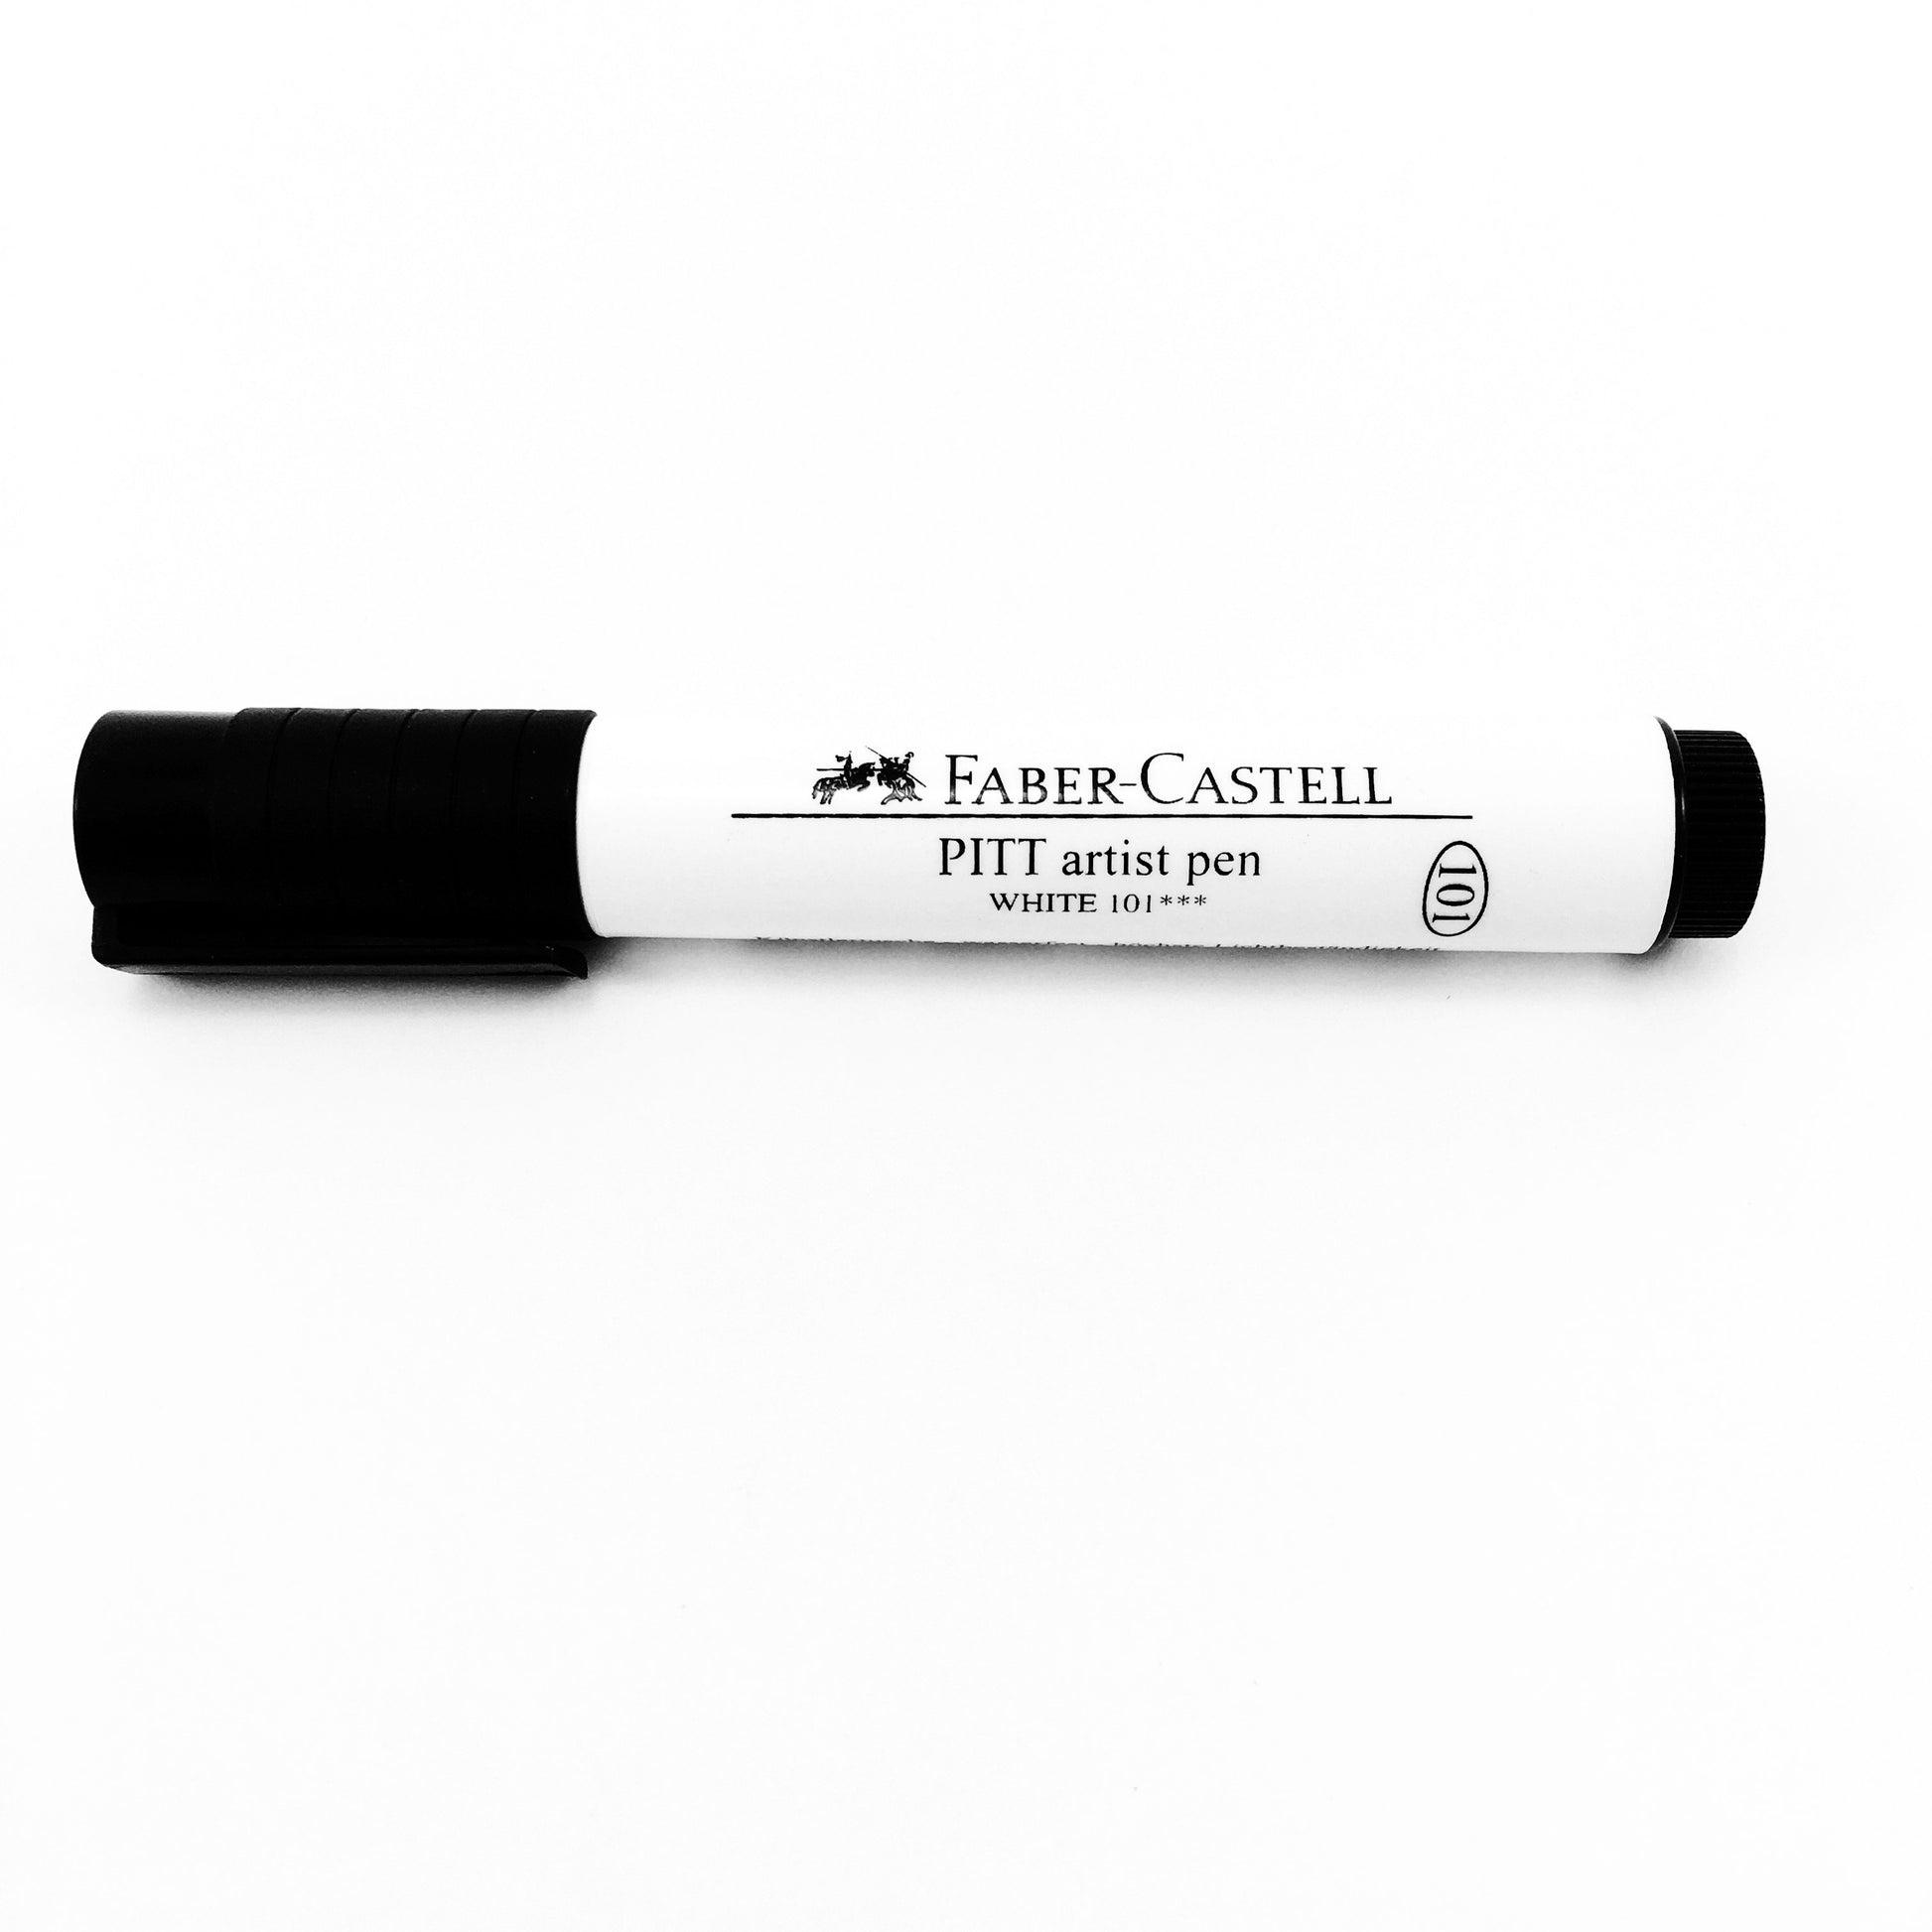 Faber Castell PITT Artist Pens 1.5mm Bullet Nib in Black or White